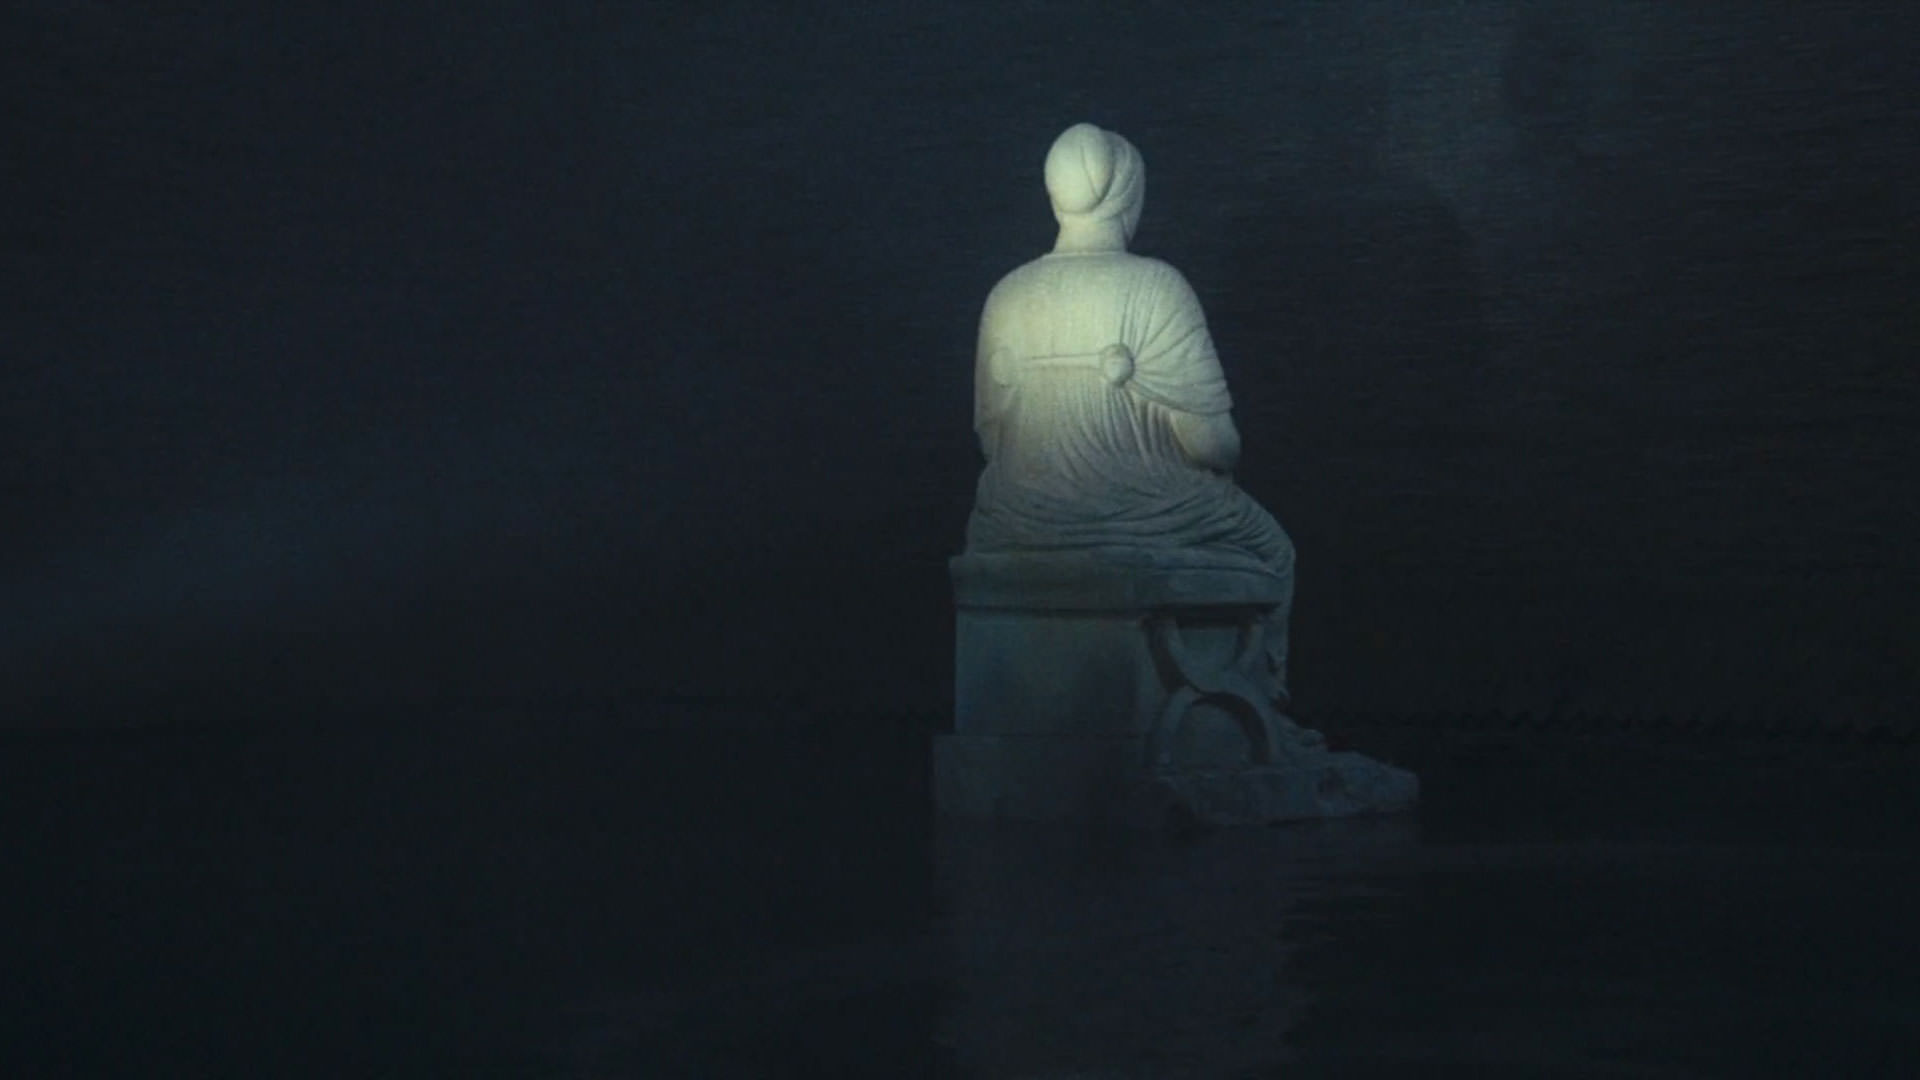 مجسمه‌ای سفیدرنگ داخل تاریکی رها شده و کسی بر آن نور می‌تاباند در نمایی از فیلم رم به کارگردانی فدریکو فلینی